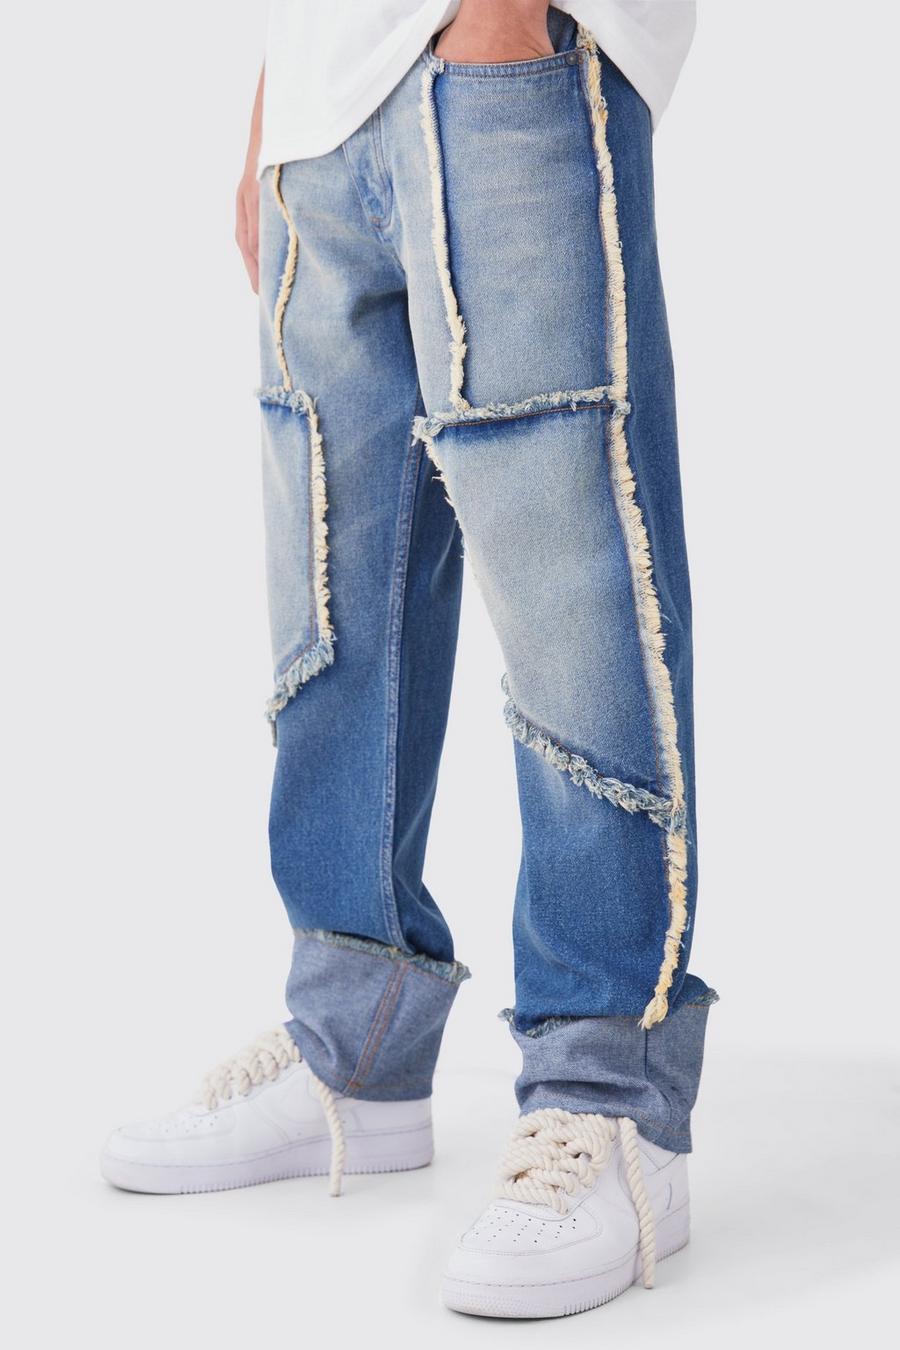 Lockere Jeans mit ausgefranstem Saum, Antique wash